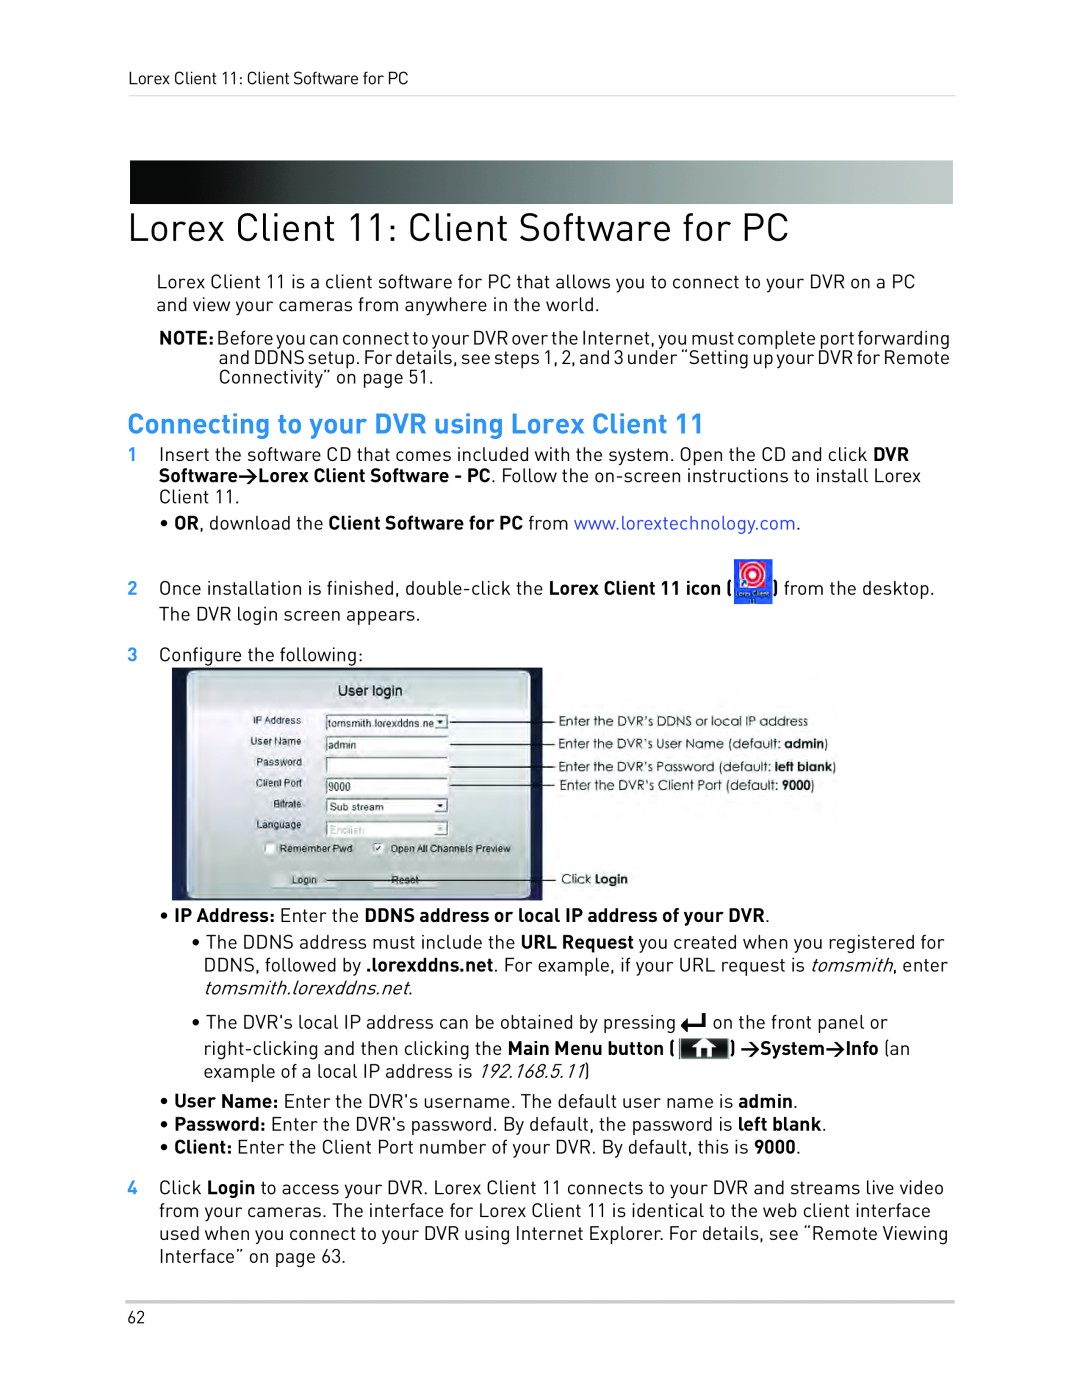 LOREX Technology LH1361001C8B, LH130 Lorex Client 11: Client Software for PC, Connecting to your DVR using Lorex Client 